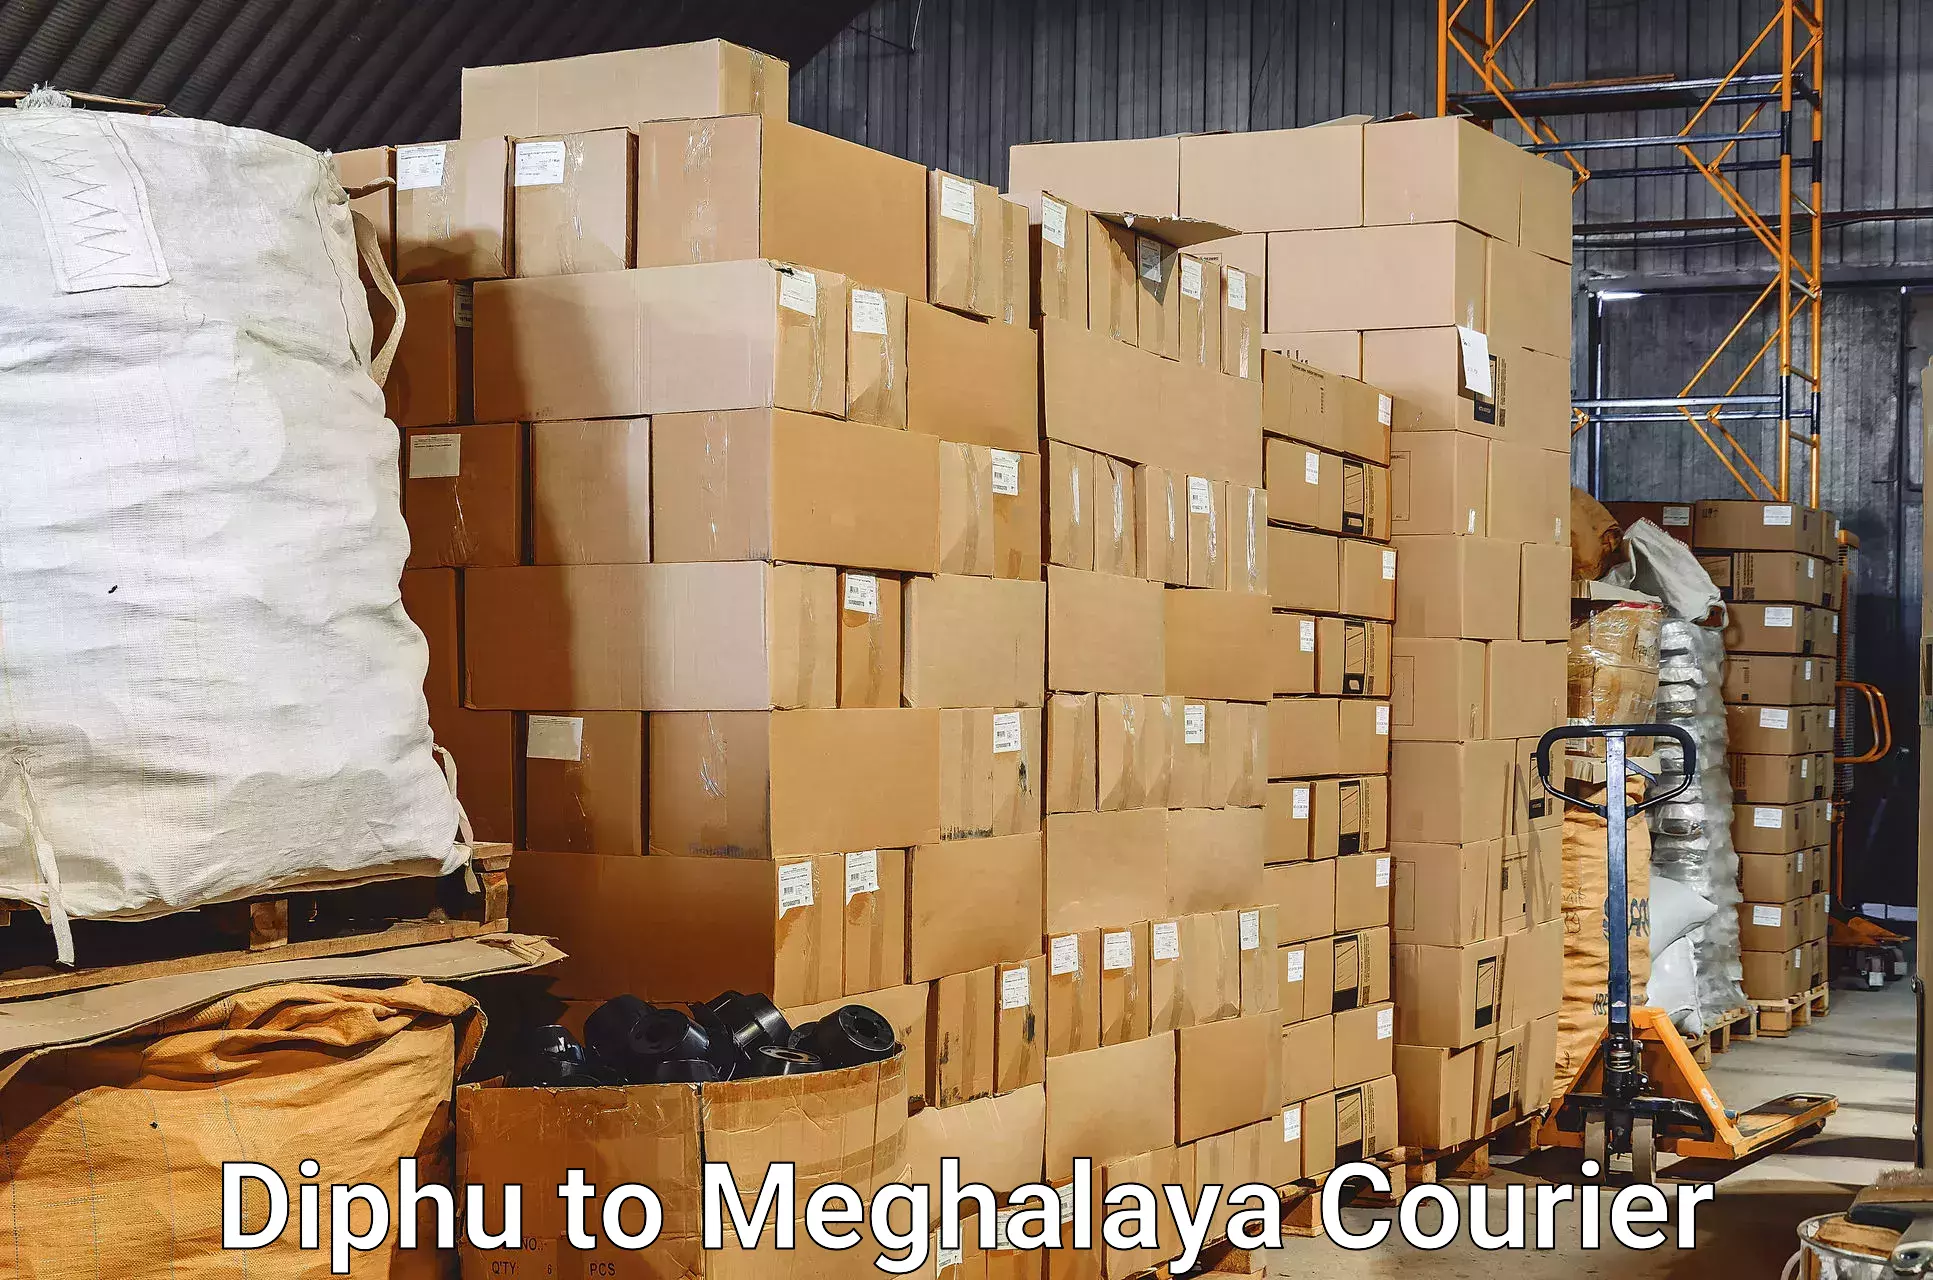 Baggage transport technology Diphu to Meghalaya